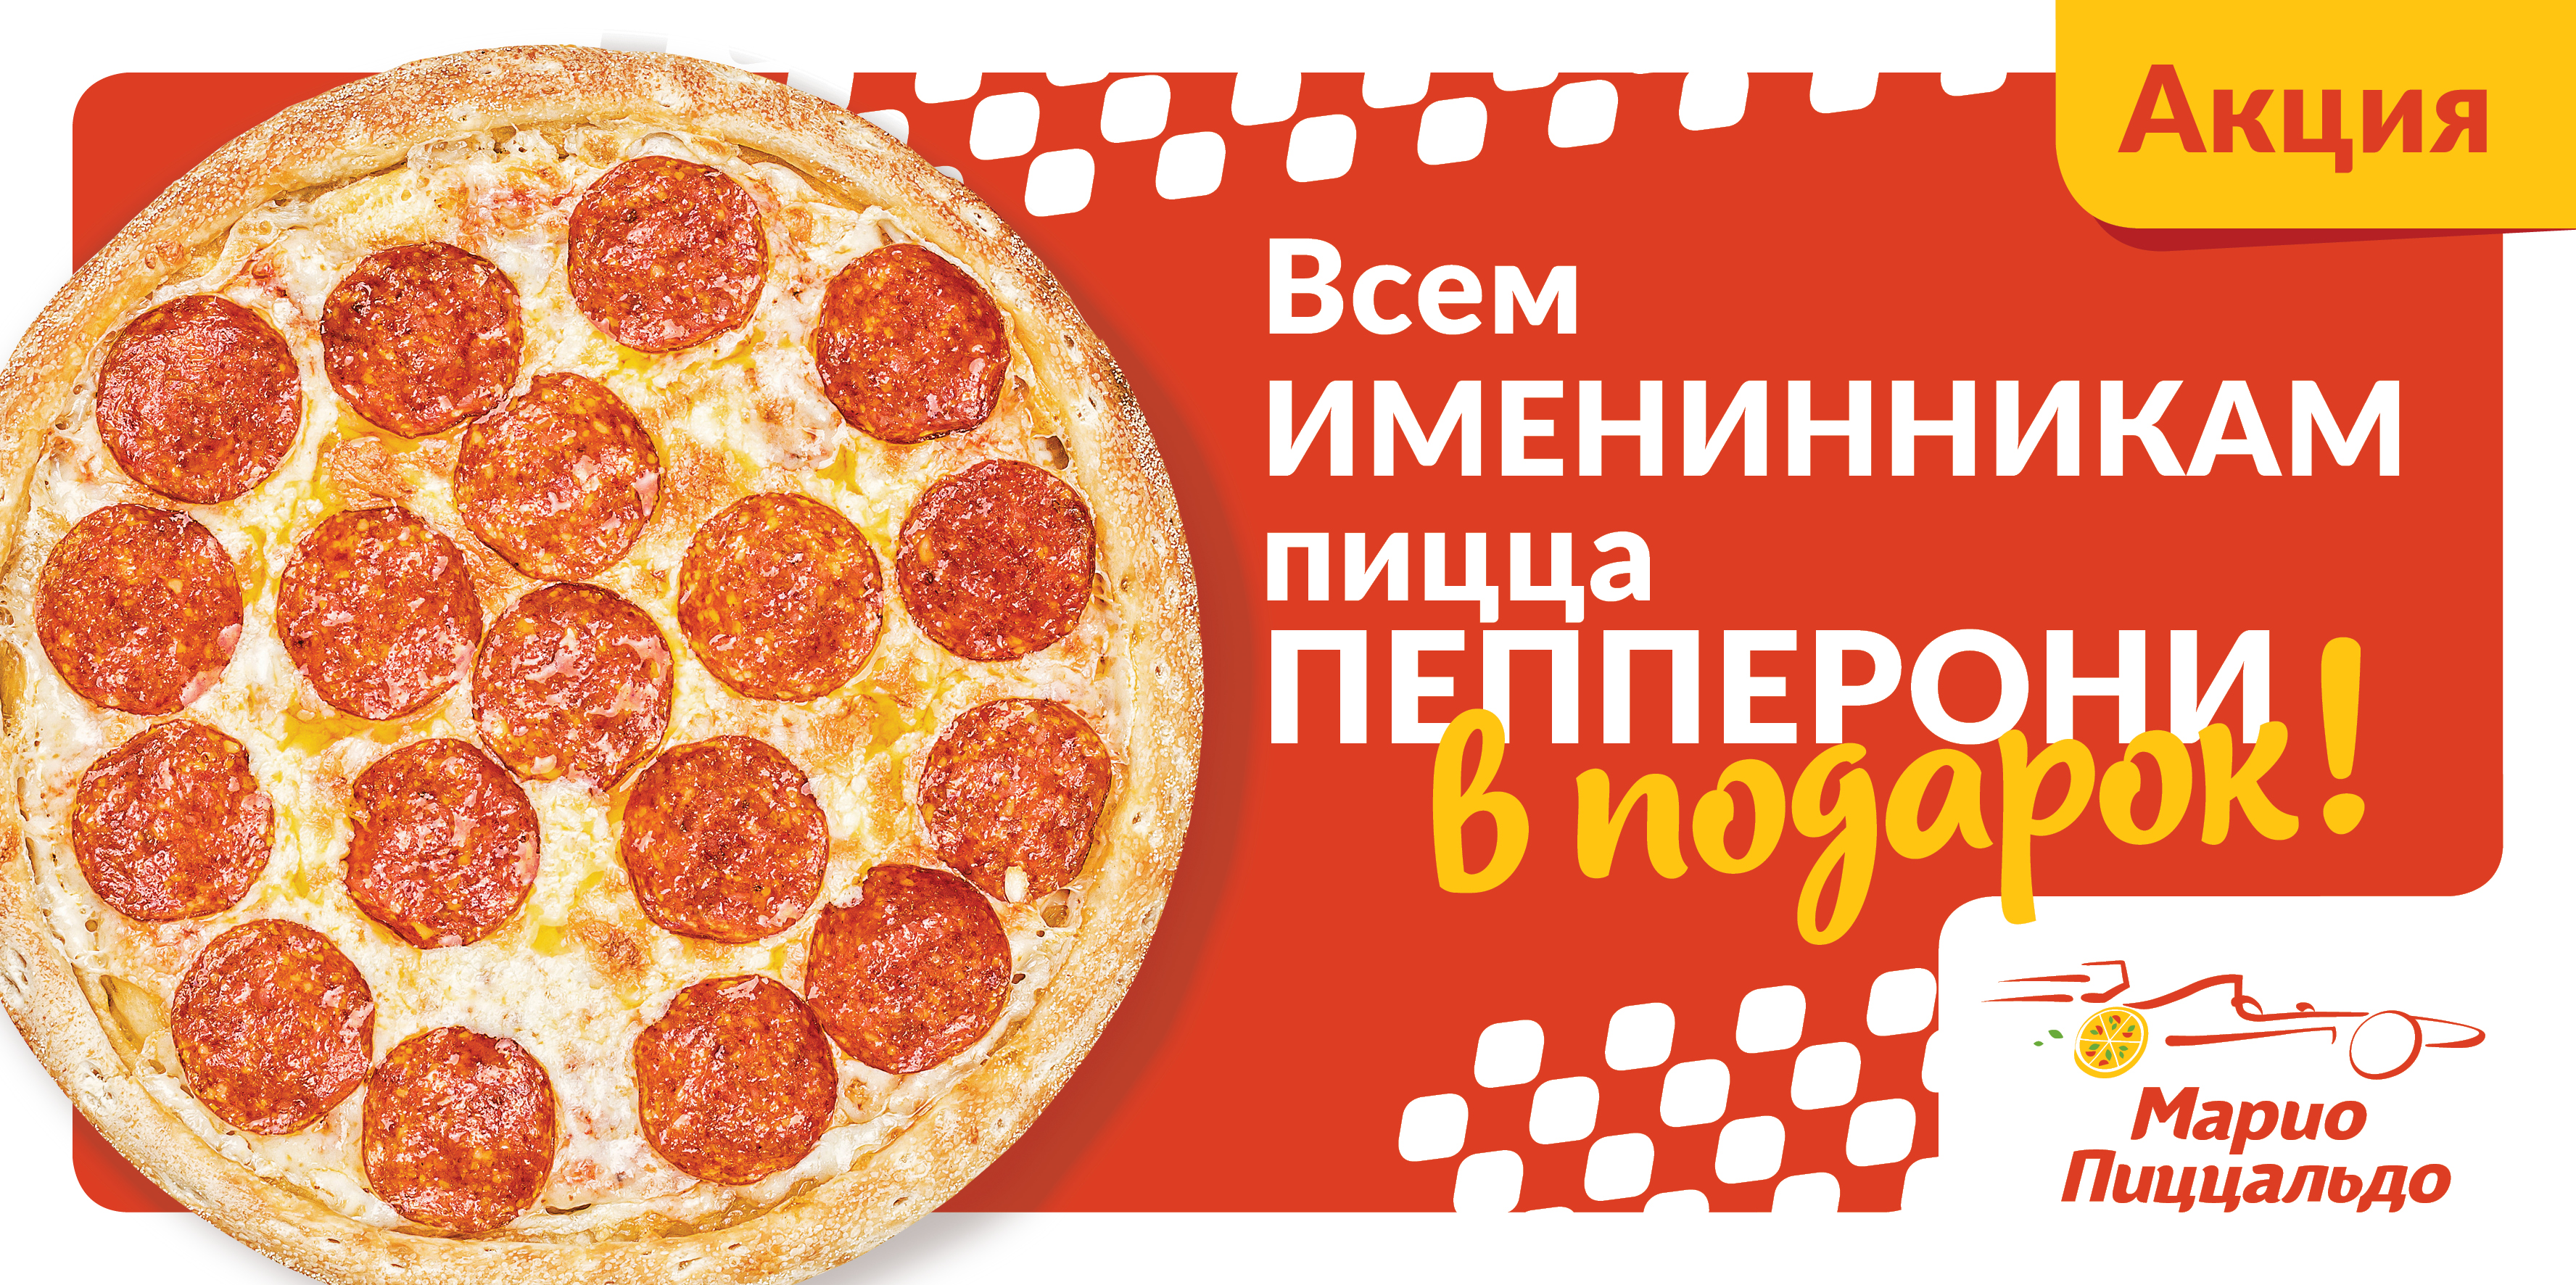 Именинникам пицца бесплатно!